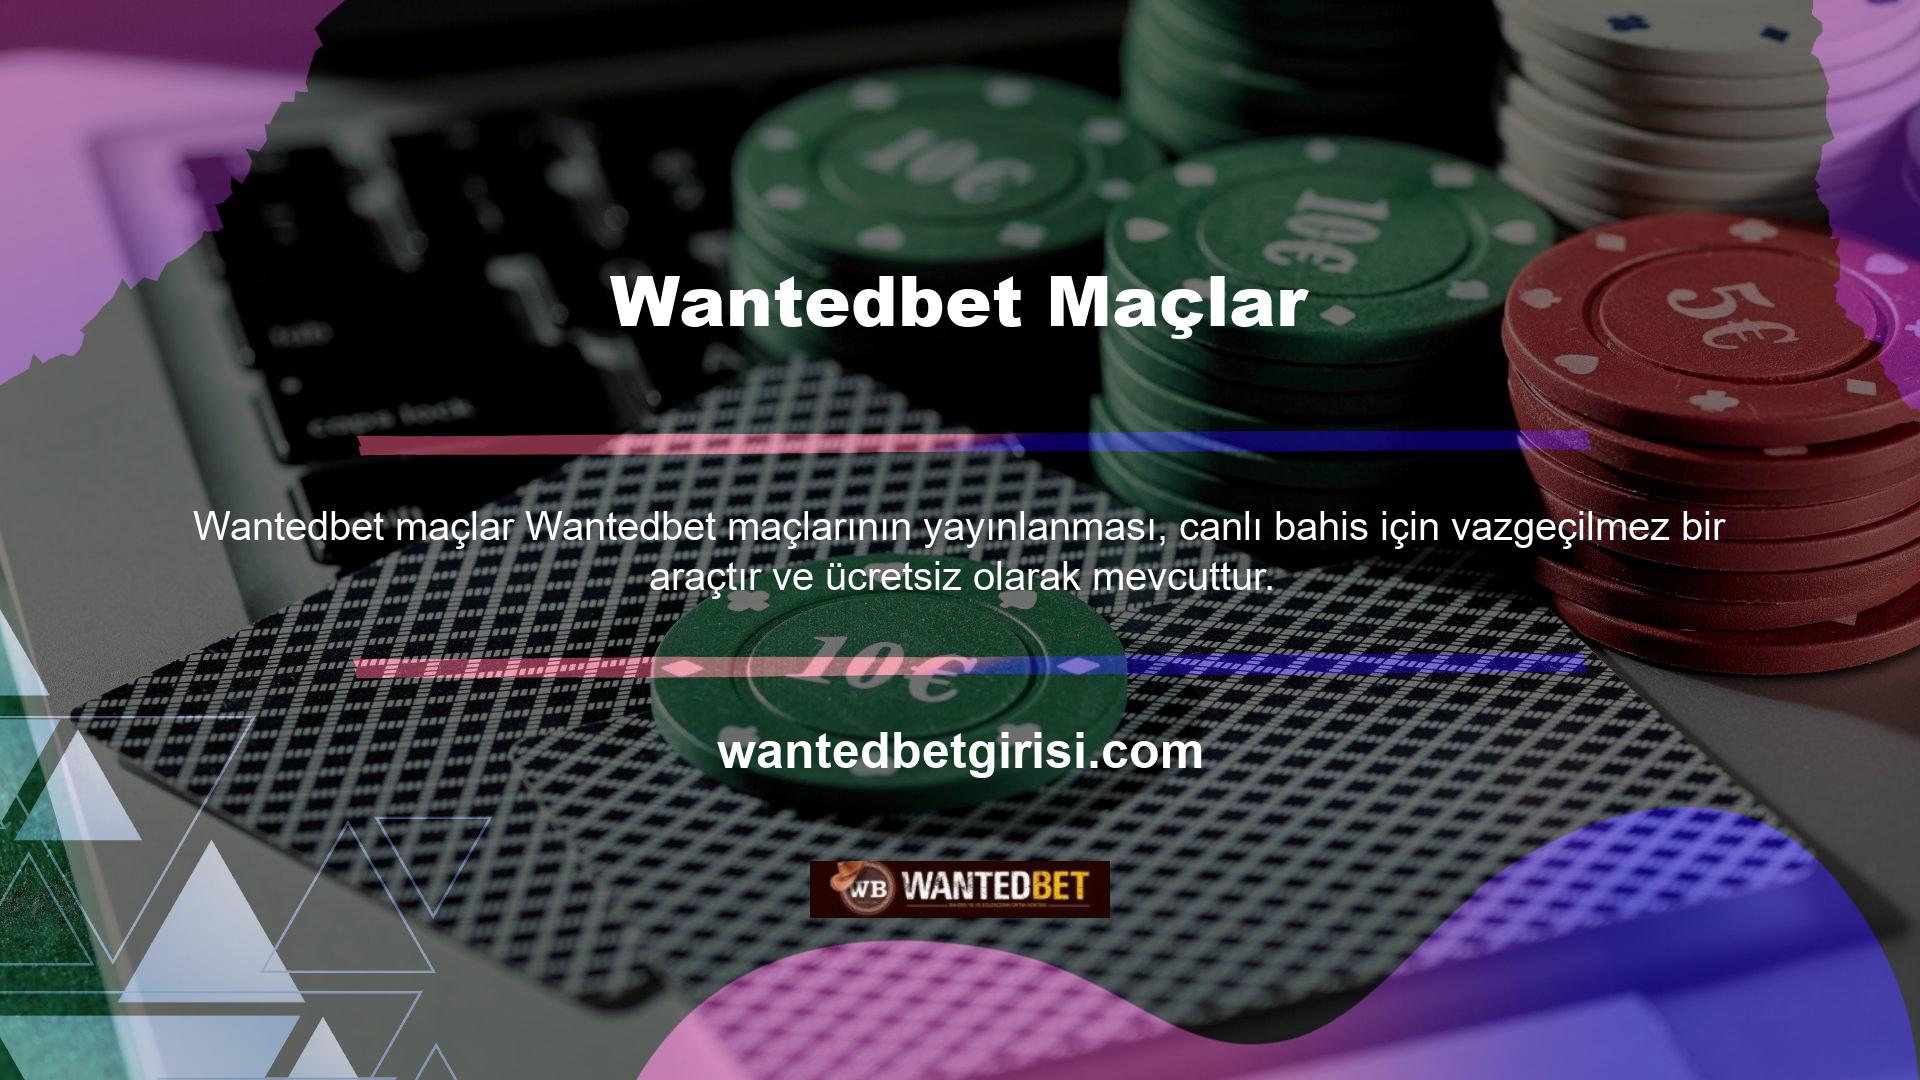 Ana sayfanın üst köşesinde bulunan Wantedbet maç yayını sekmesine tıkladığınızda yeni bir oyuncu görüntülenir